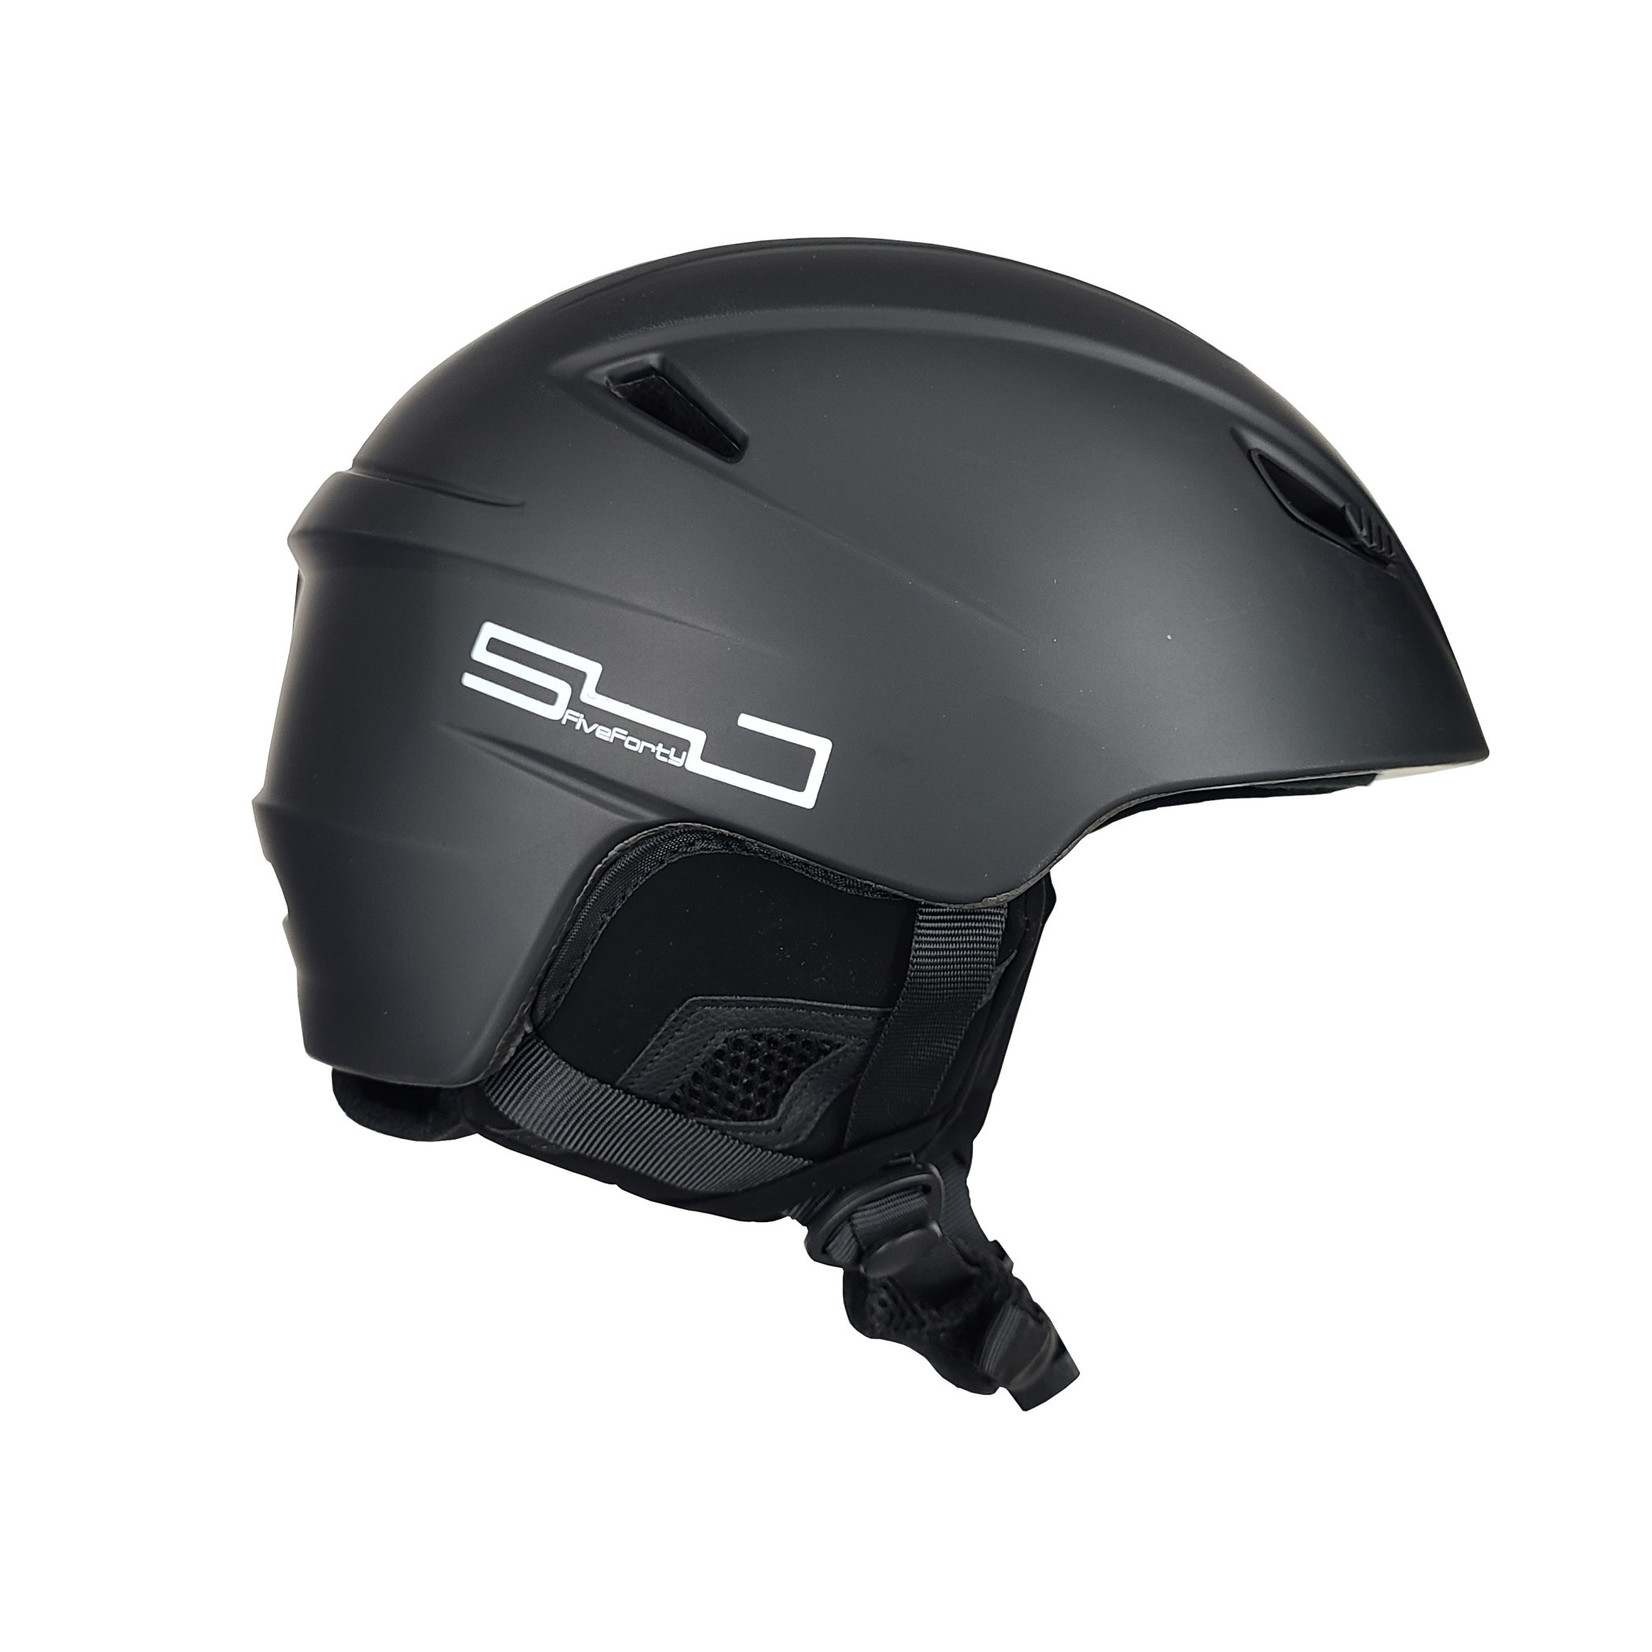 540 540 Neptune - Ski Helmet